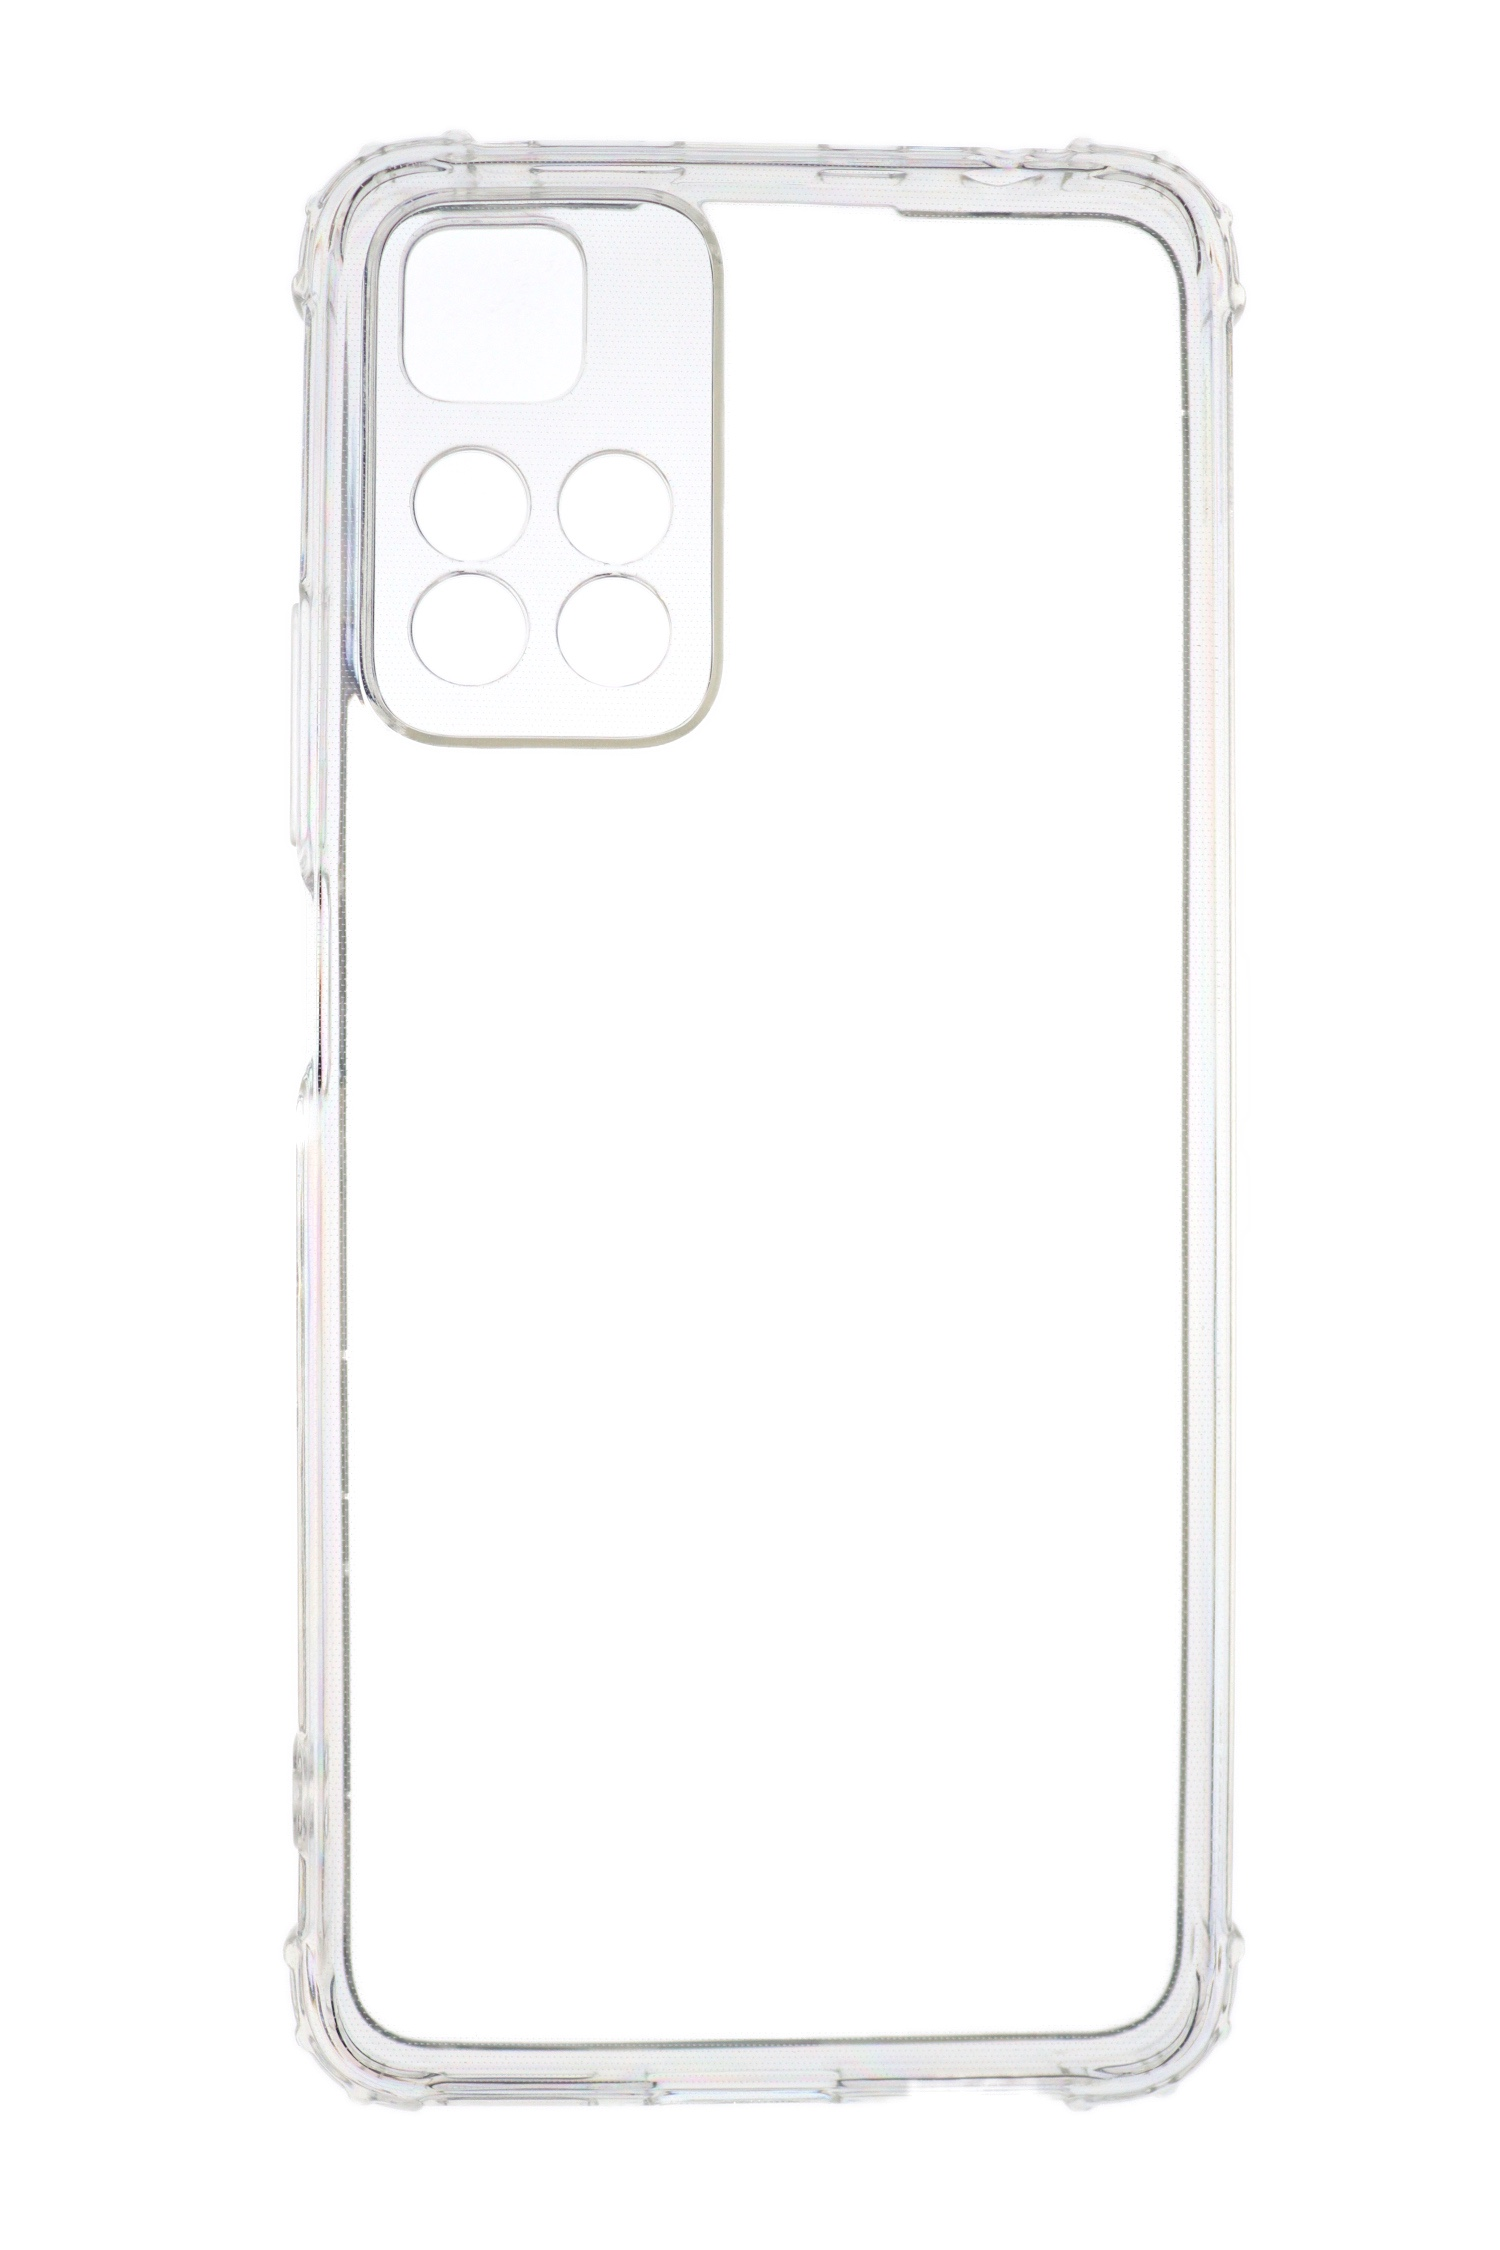 11 Anti Redmi Backcover, Transparent mm Pro+, JAMCOVER 1.5 Note Case, Xiaomi, TPU Shock